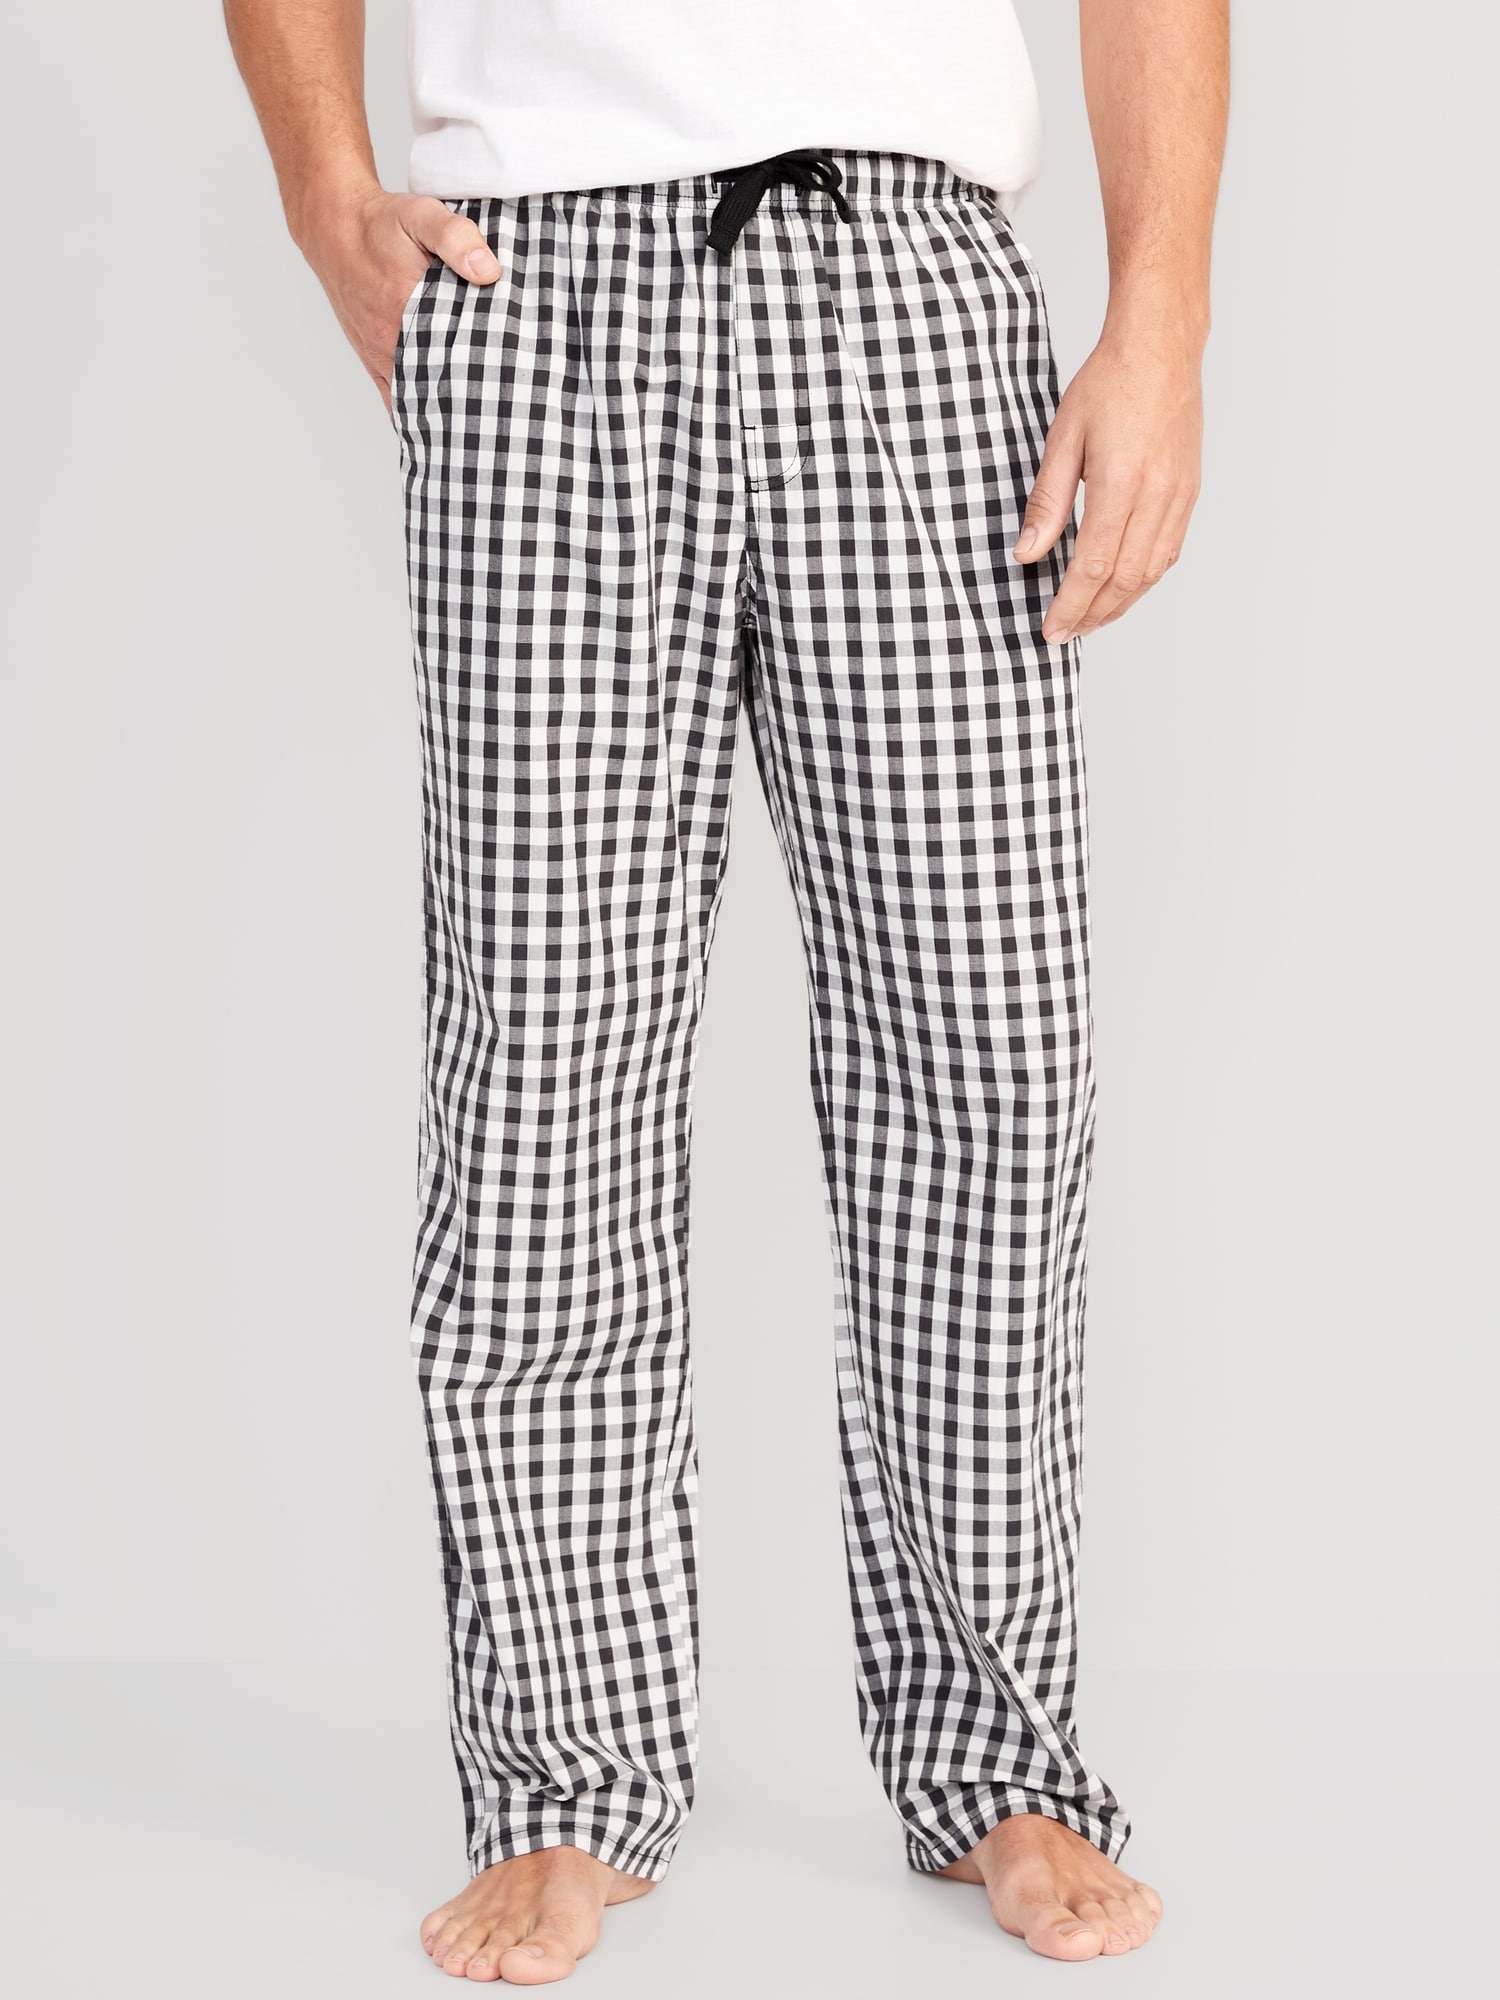 Old Navy Printed Poplin Pajama Pants for Men multi. 1